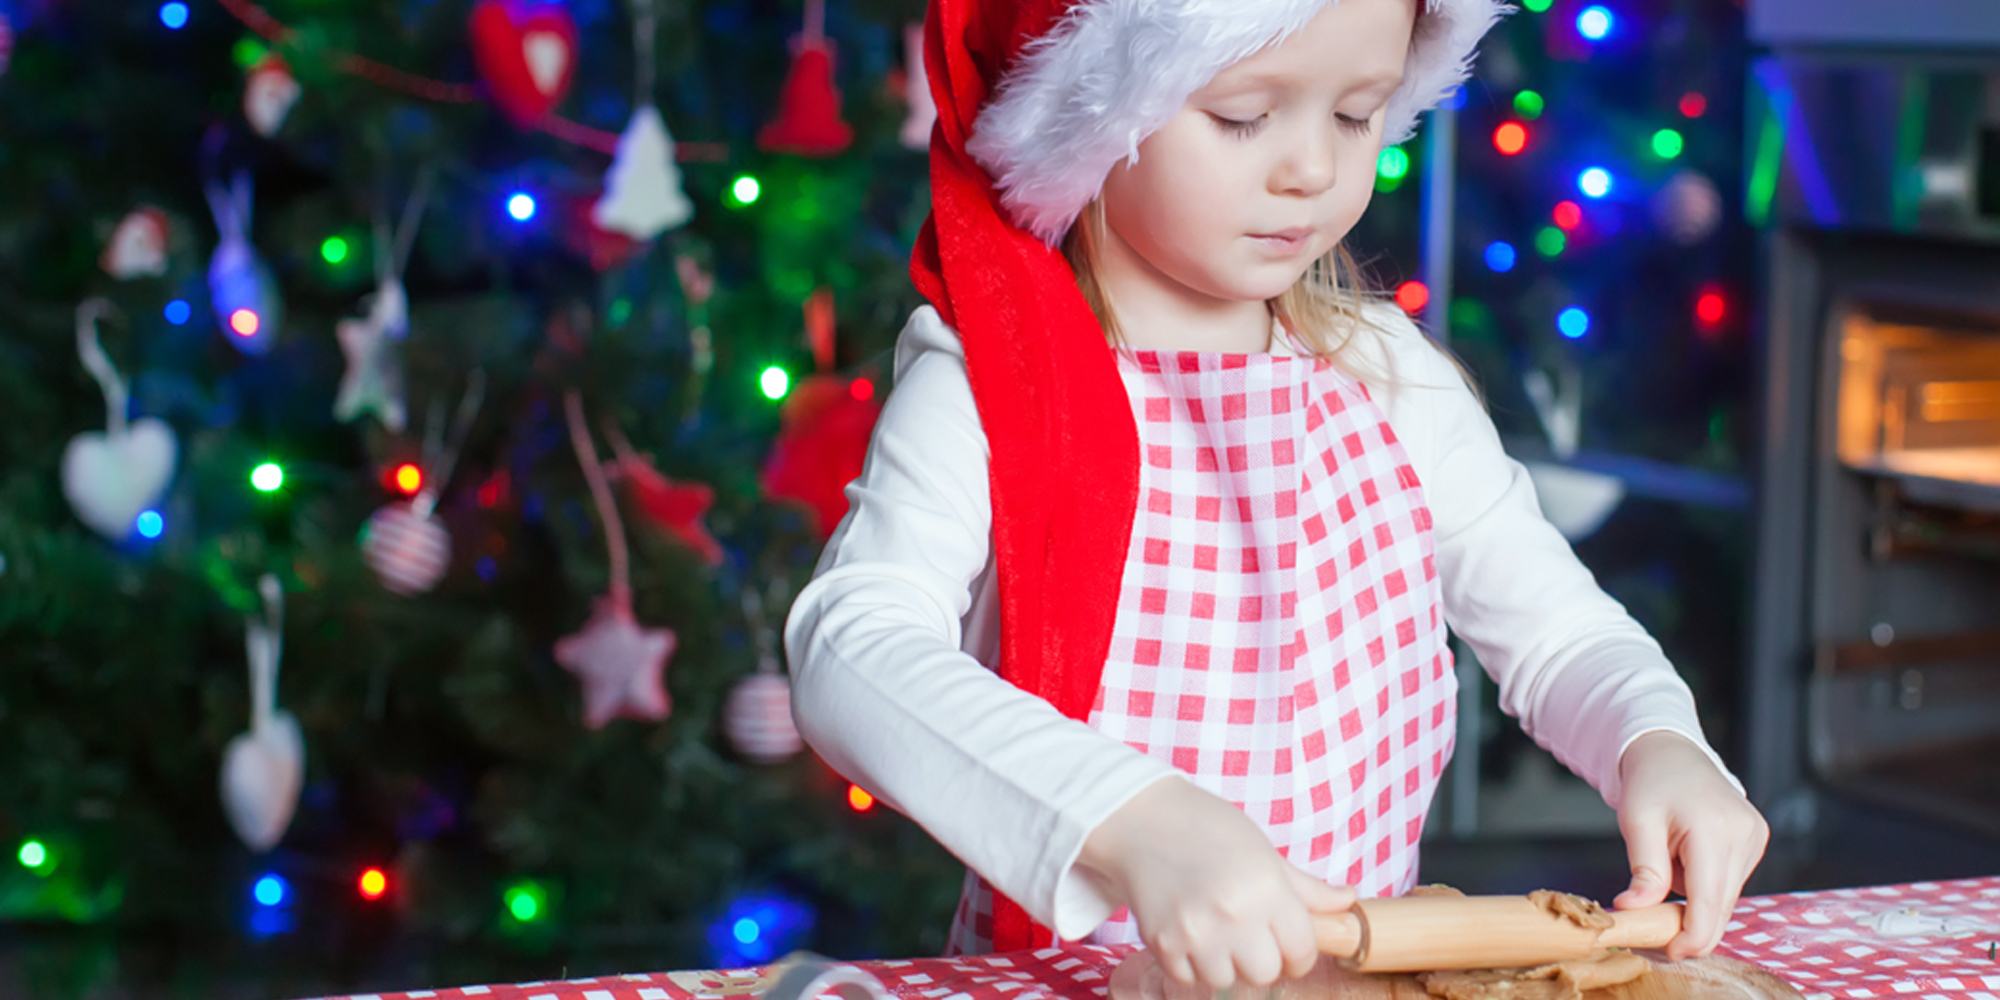 Julebagning, småkager, juleknas, barn, voksen, familie, julehygge hos FOF Nordvestjylland